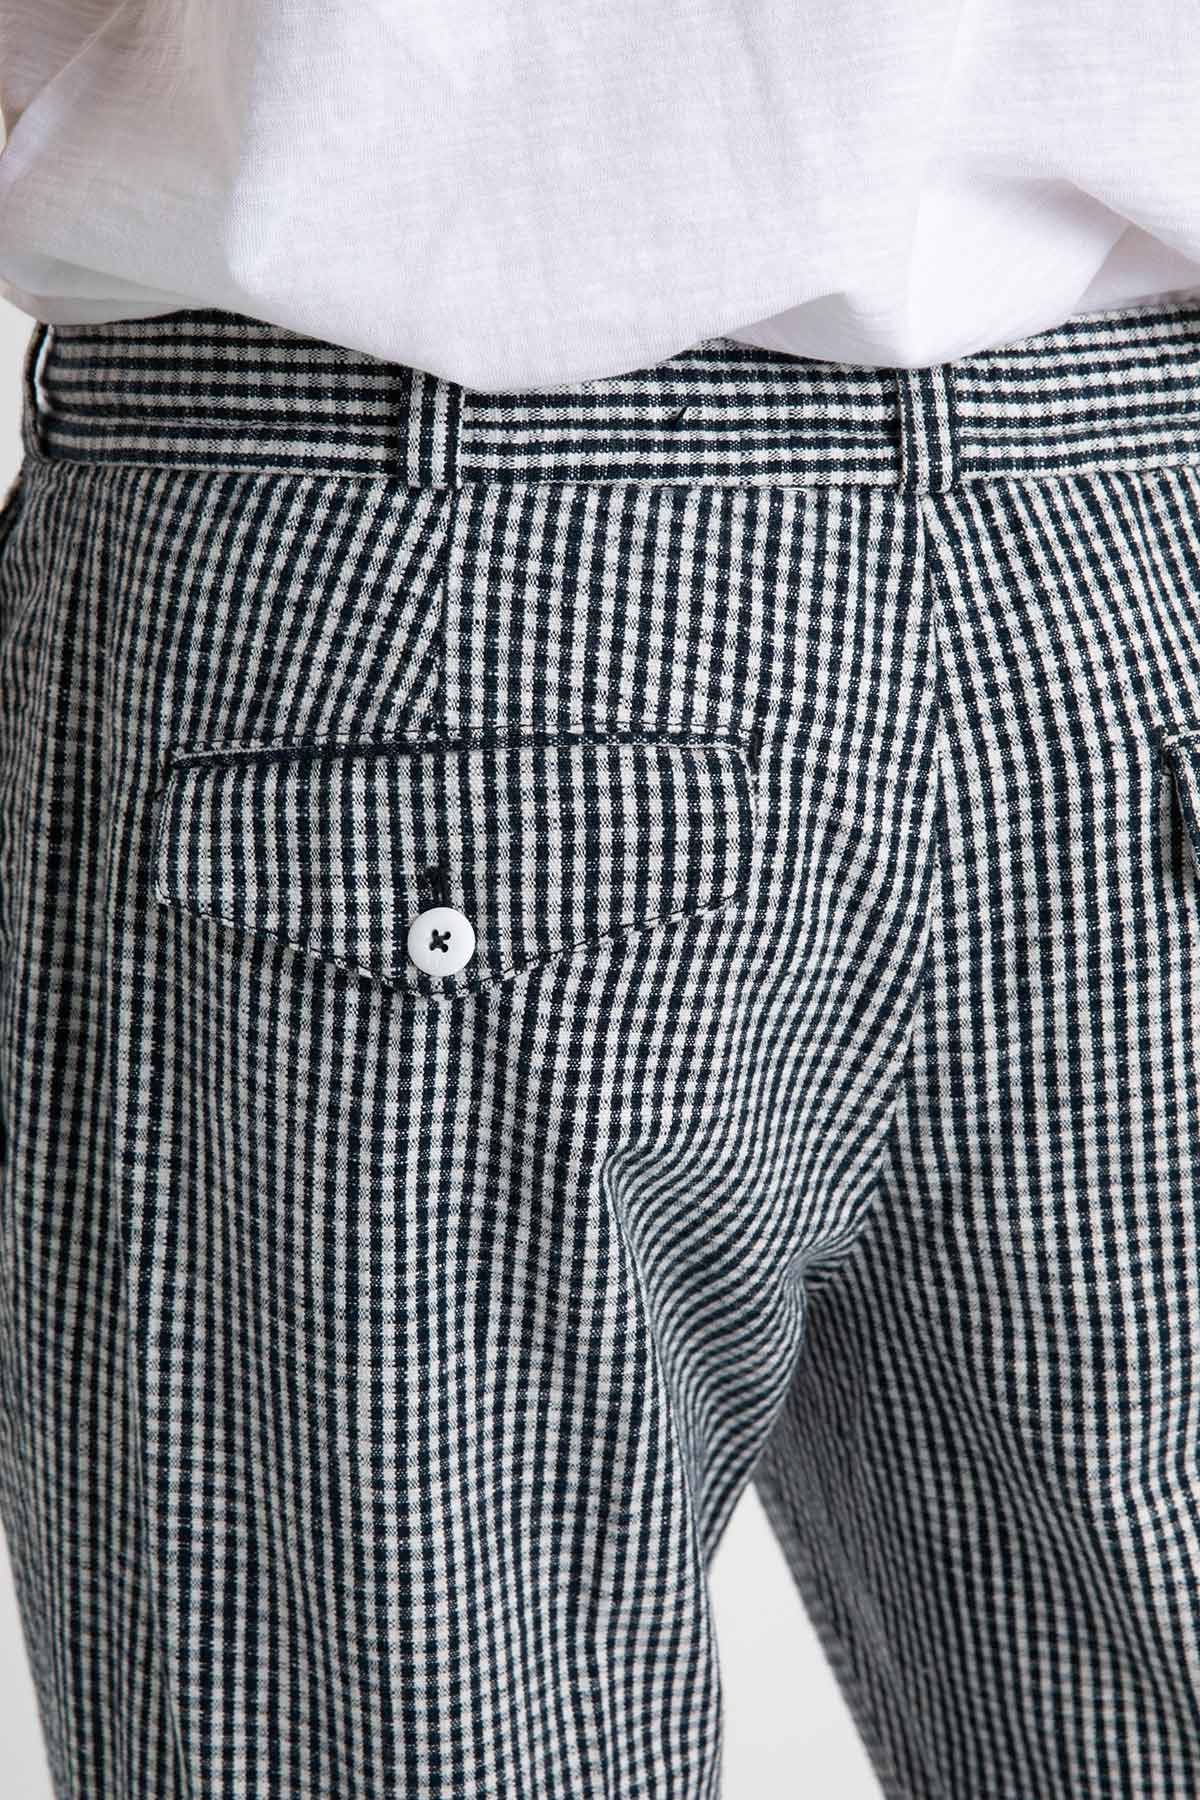 Pantaloni Torino The Rebel Fit Pötikareli Pantolon-Libas Trendy Fashion Store